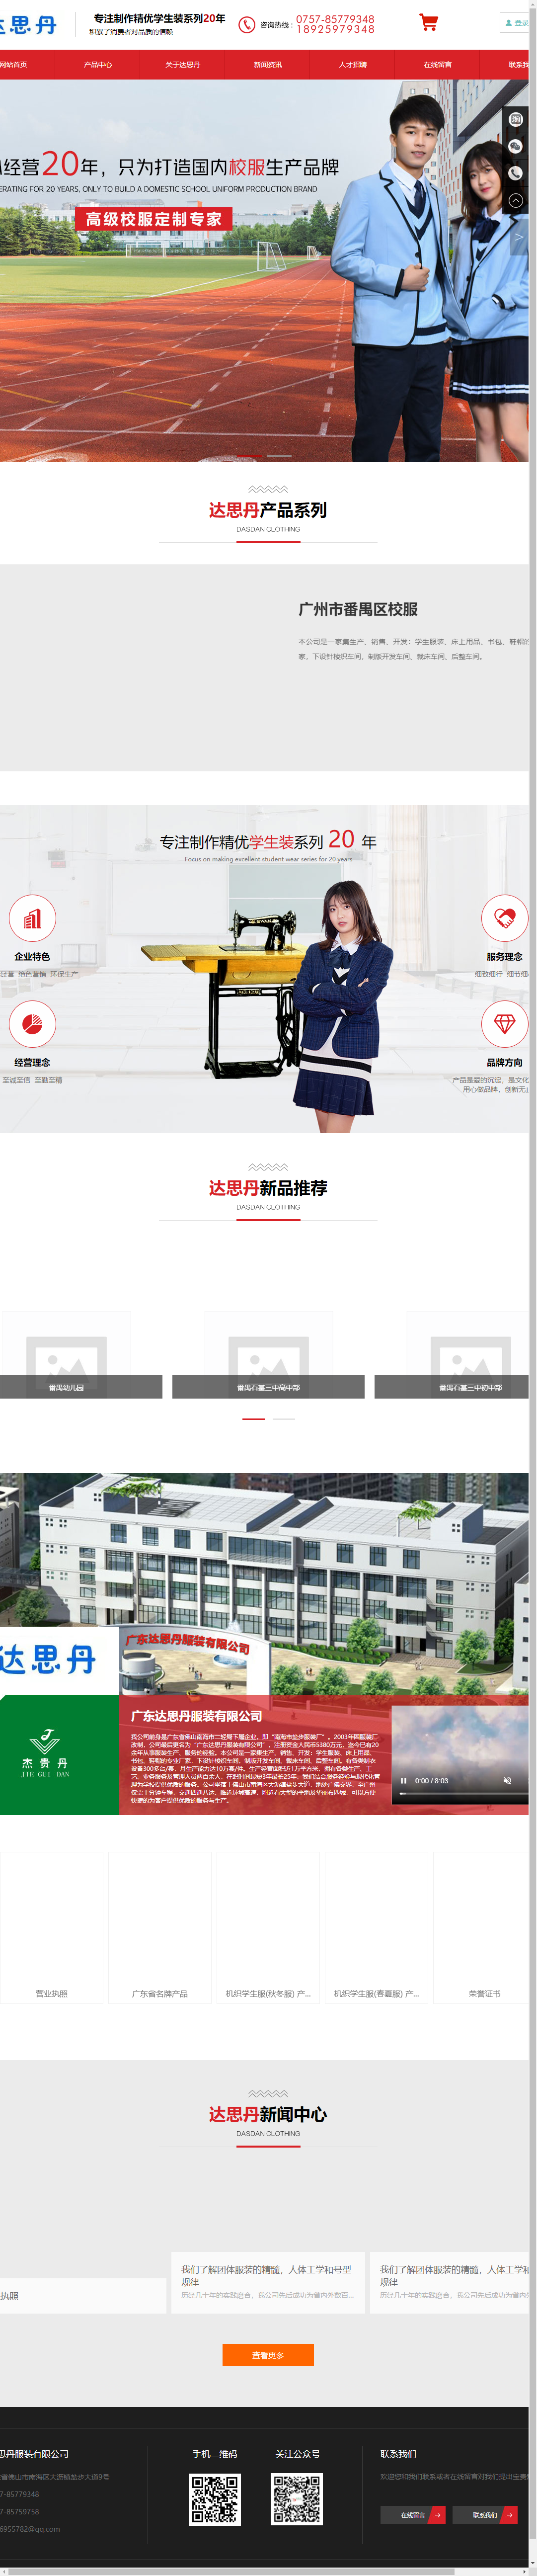 广东达思丹服装有限公司网站案例